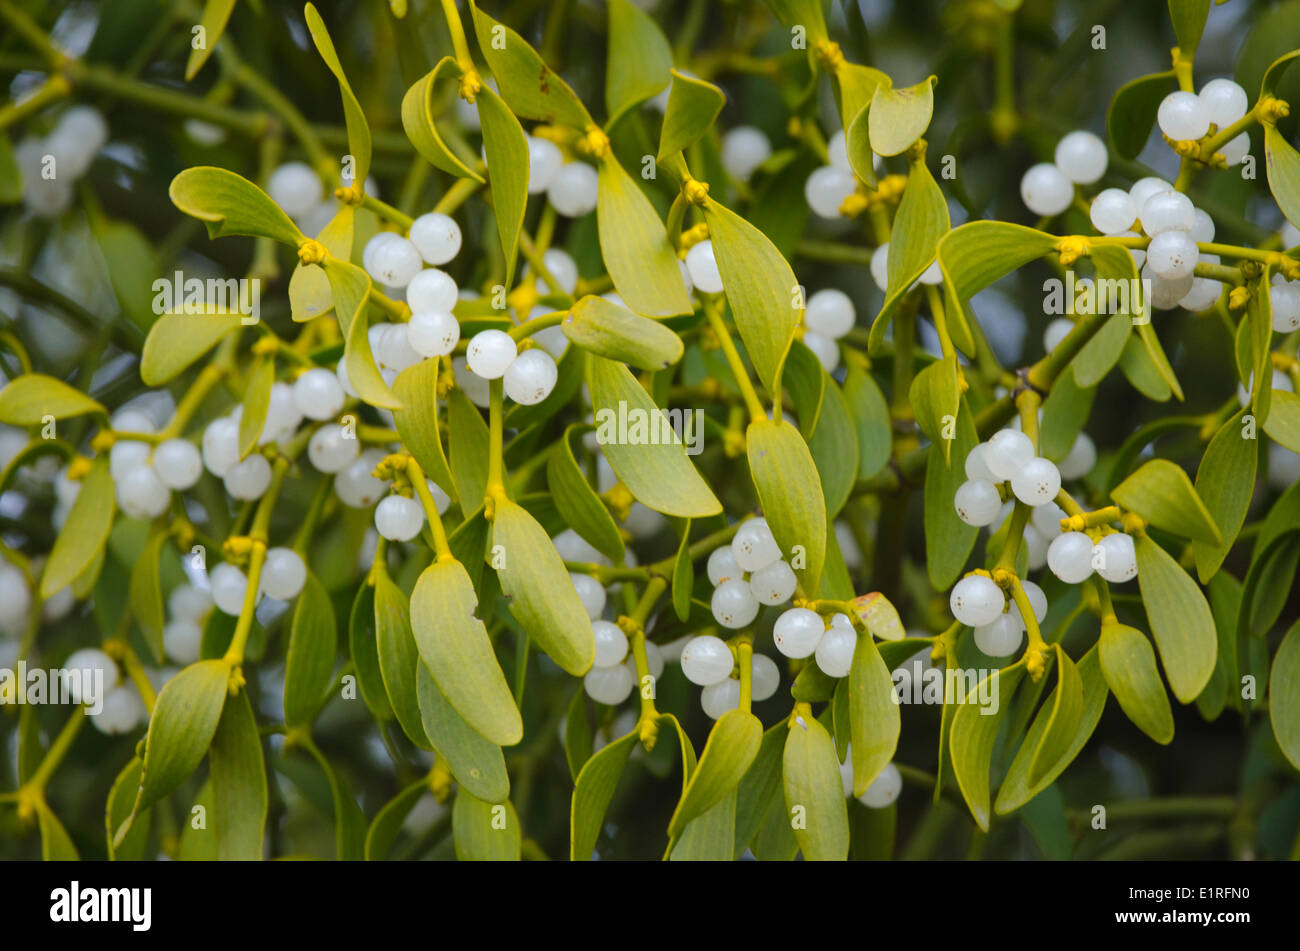 mistletoe with berries Stock Photo